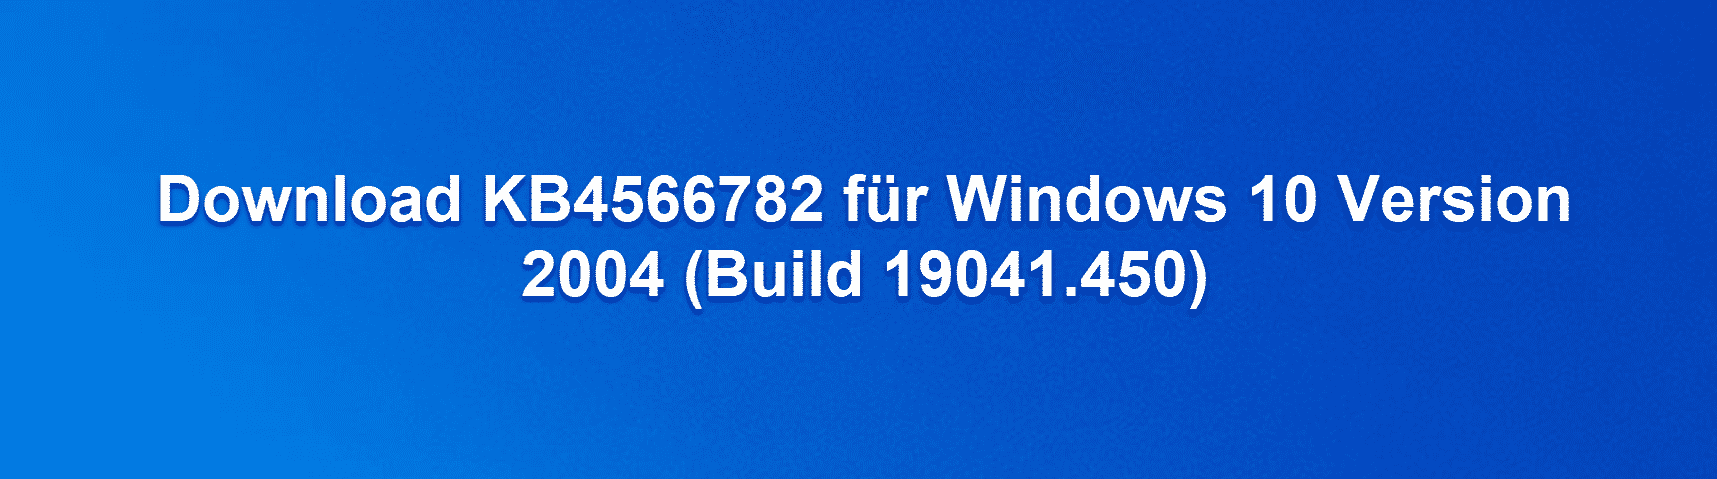 Download KB4566782 für Windows 10 Version 2004 (Build 19041.450)